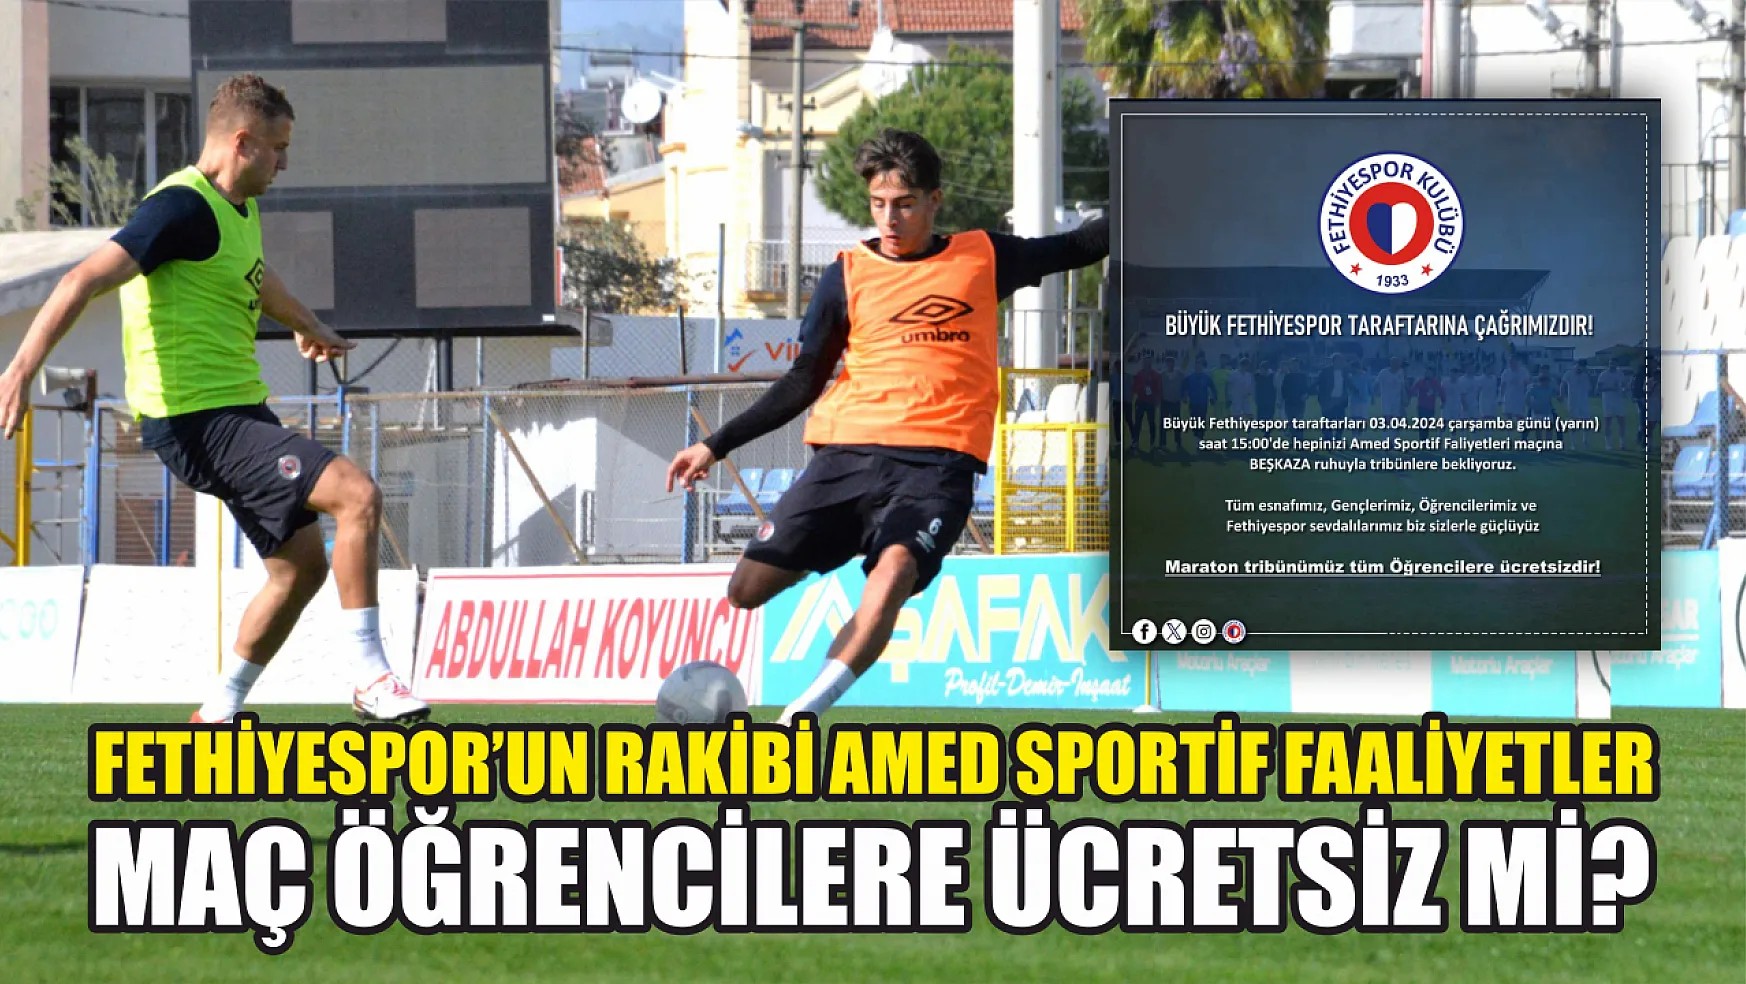 Fethiyespor'un Rakibi Amed Sportif Faaliyetler, Maç Öğrencilere Ücretsiz Mi?